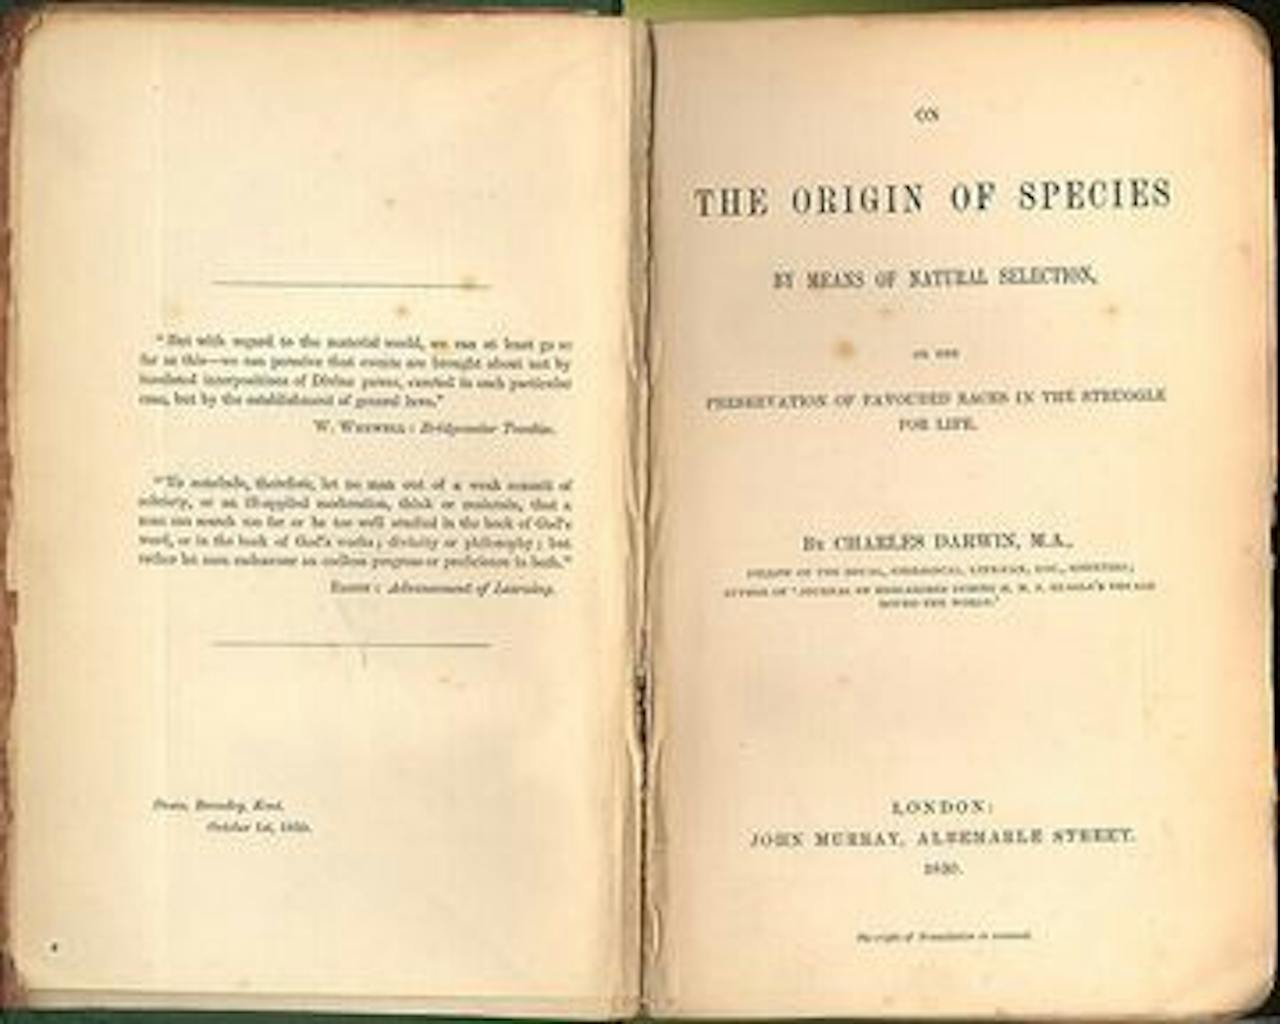 Twee vergeelde bladzijdes van the Origin of Species.